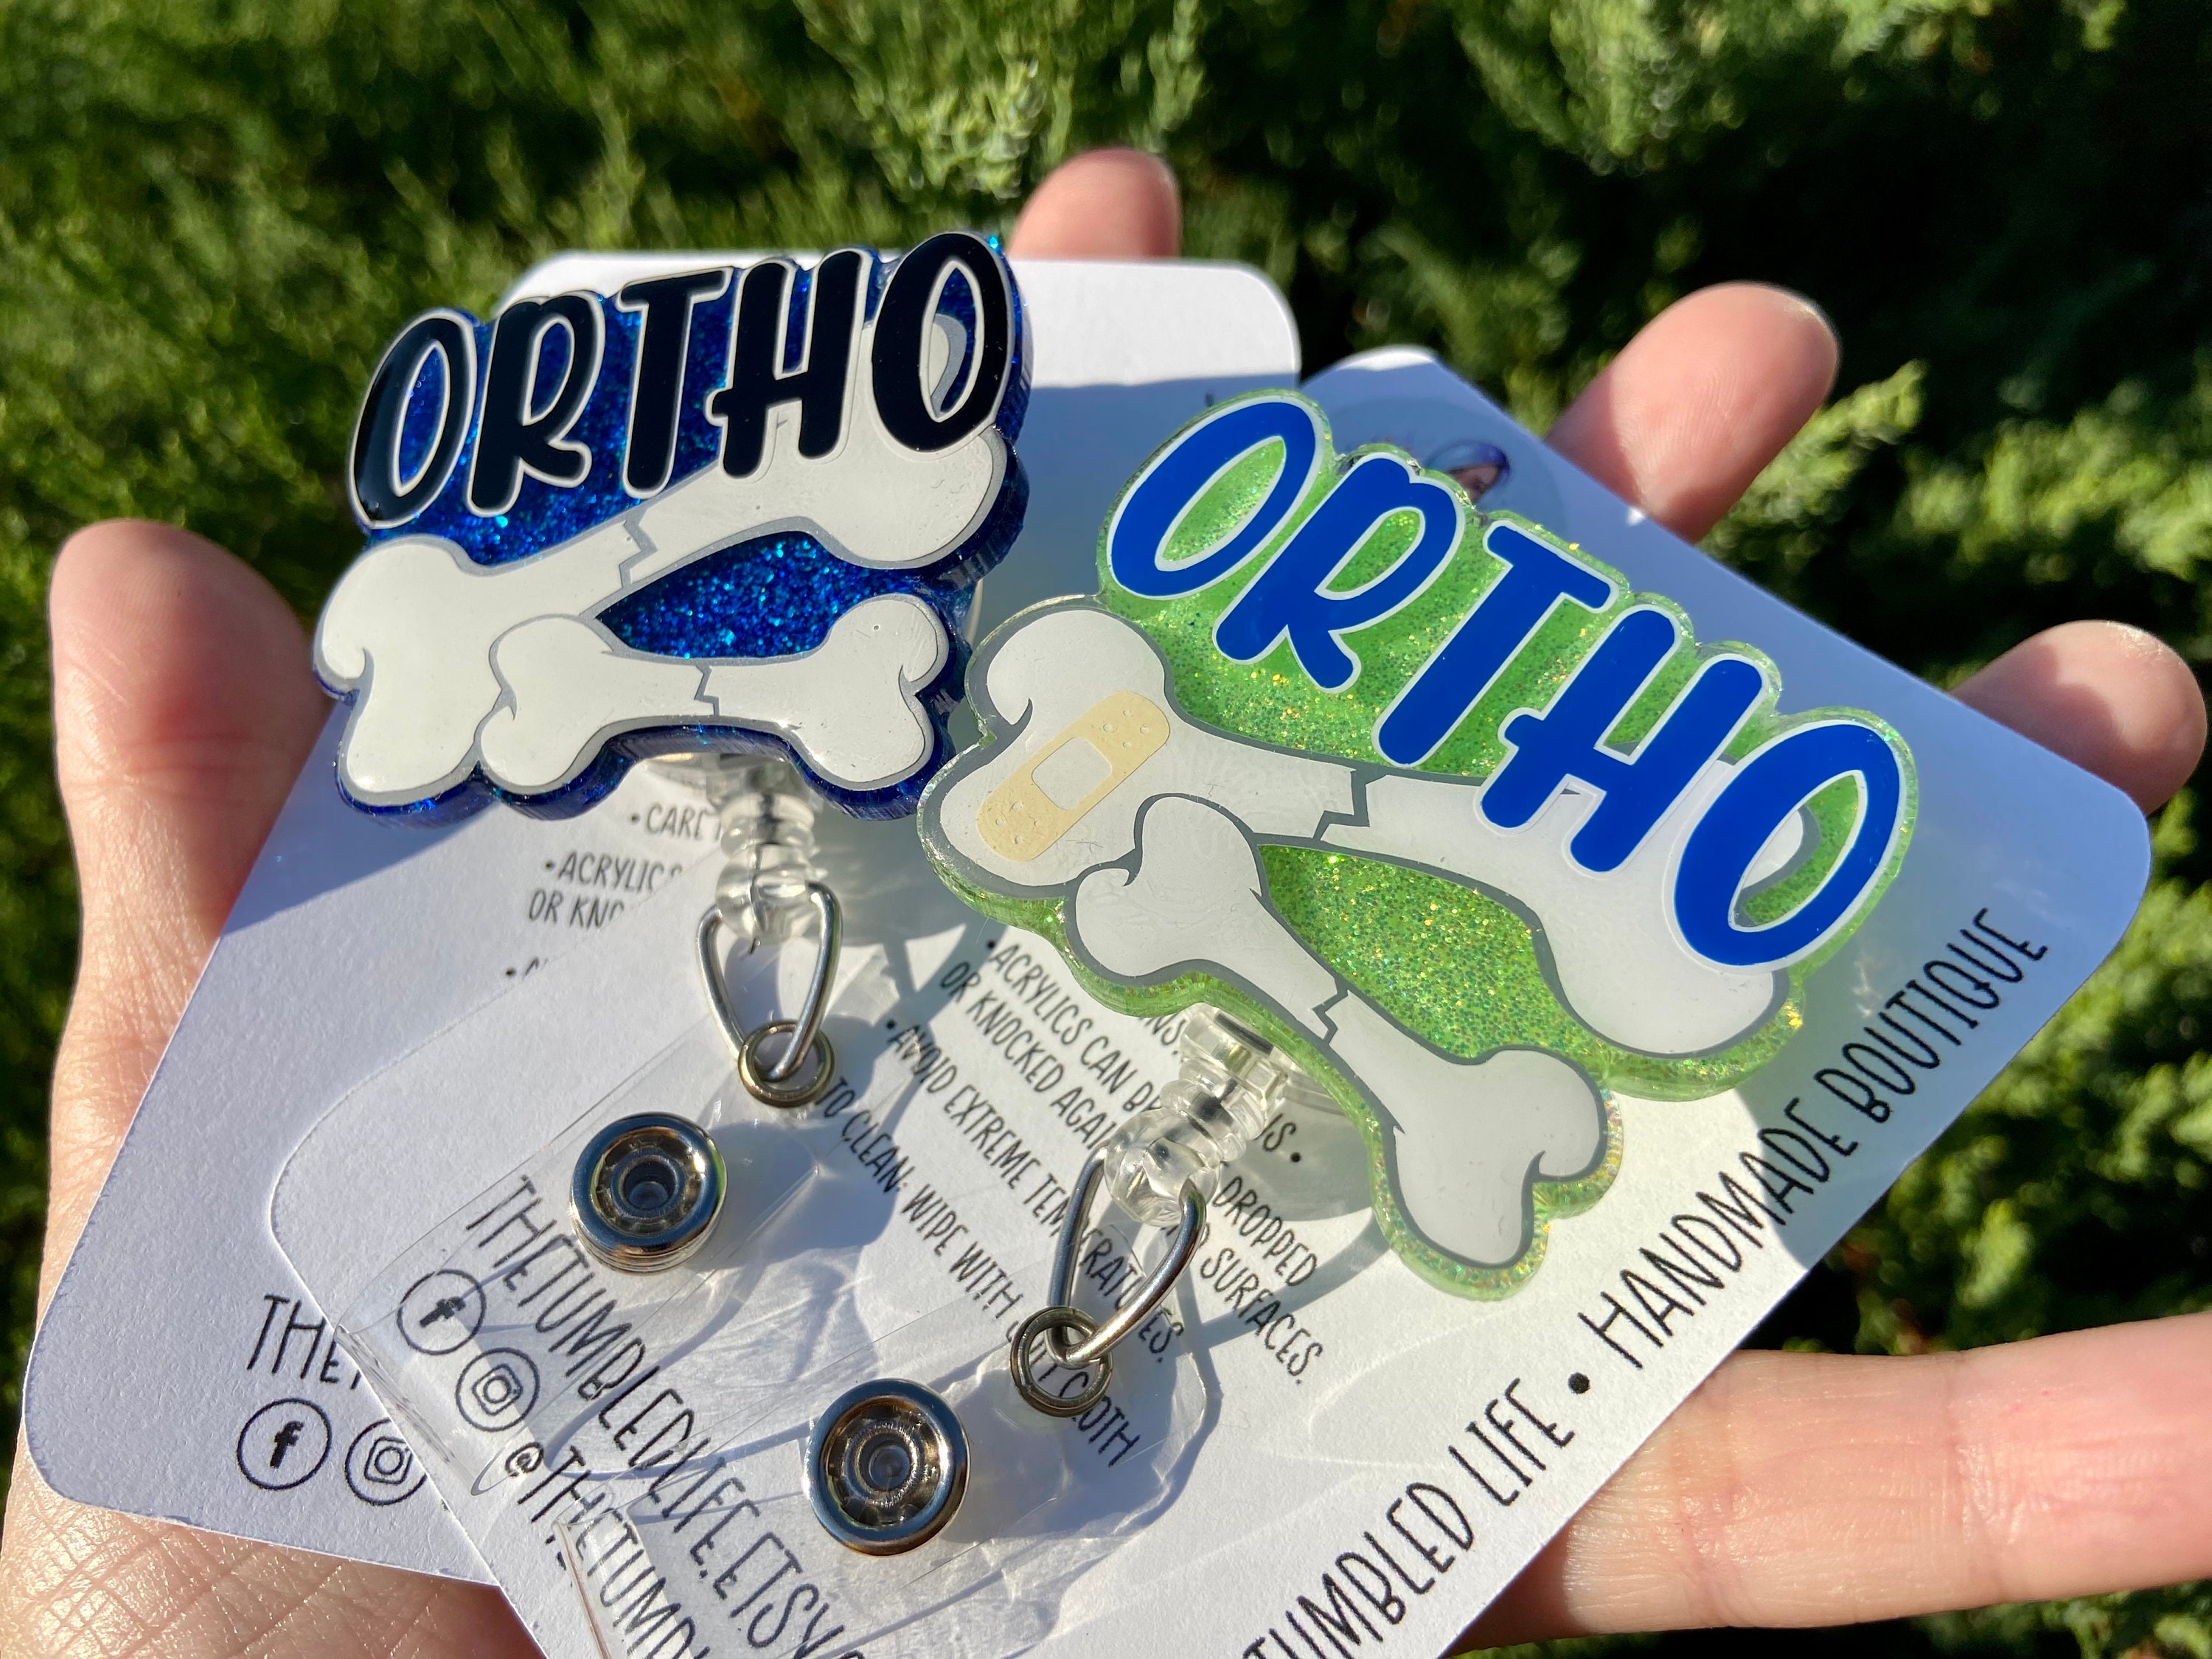 Ortho Badge Reel, Orthopedic ID Badge, Orthopedic NP Gifts, Ortho